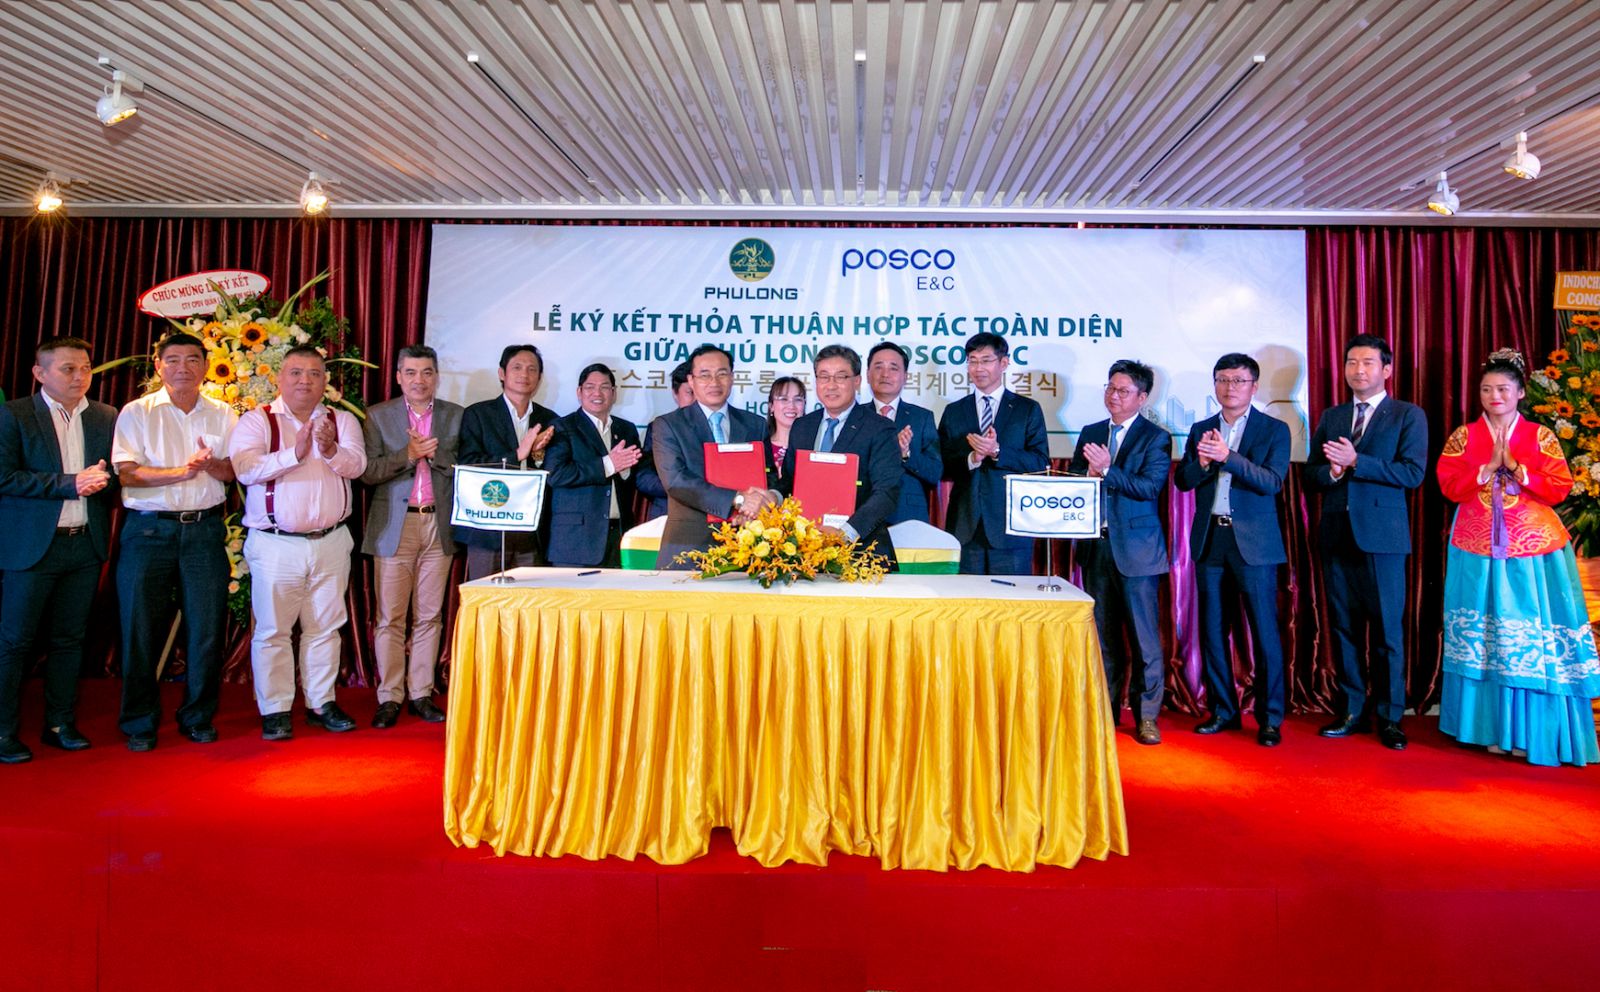 Lễ ký kết thỏa thuận hợp tác chiến lược toàn diện giữa Phú Long và Posco E&C.